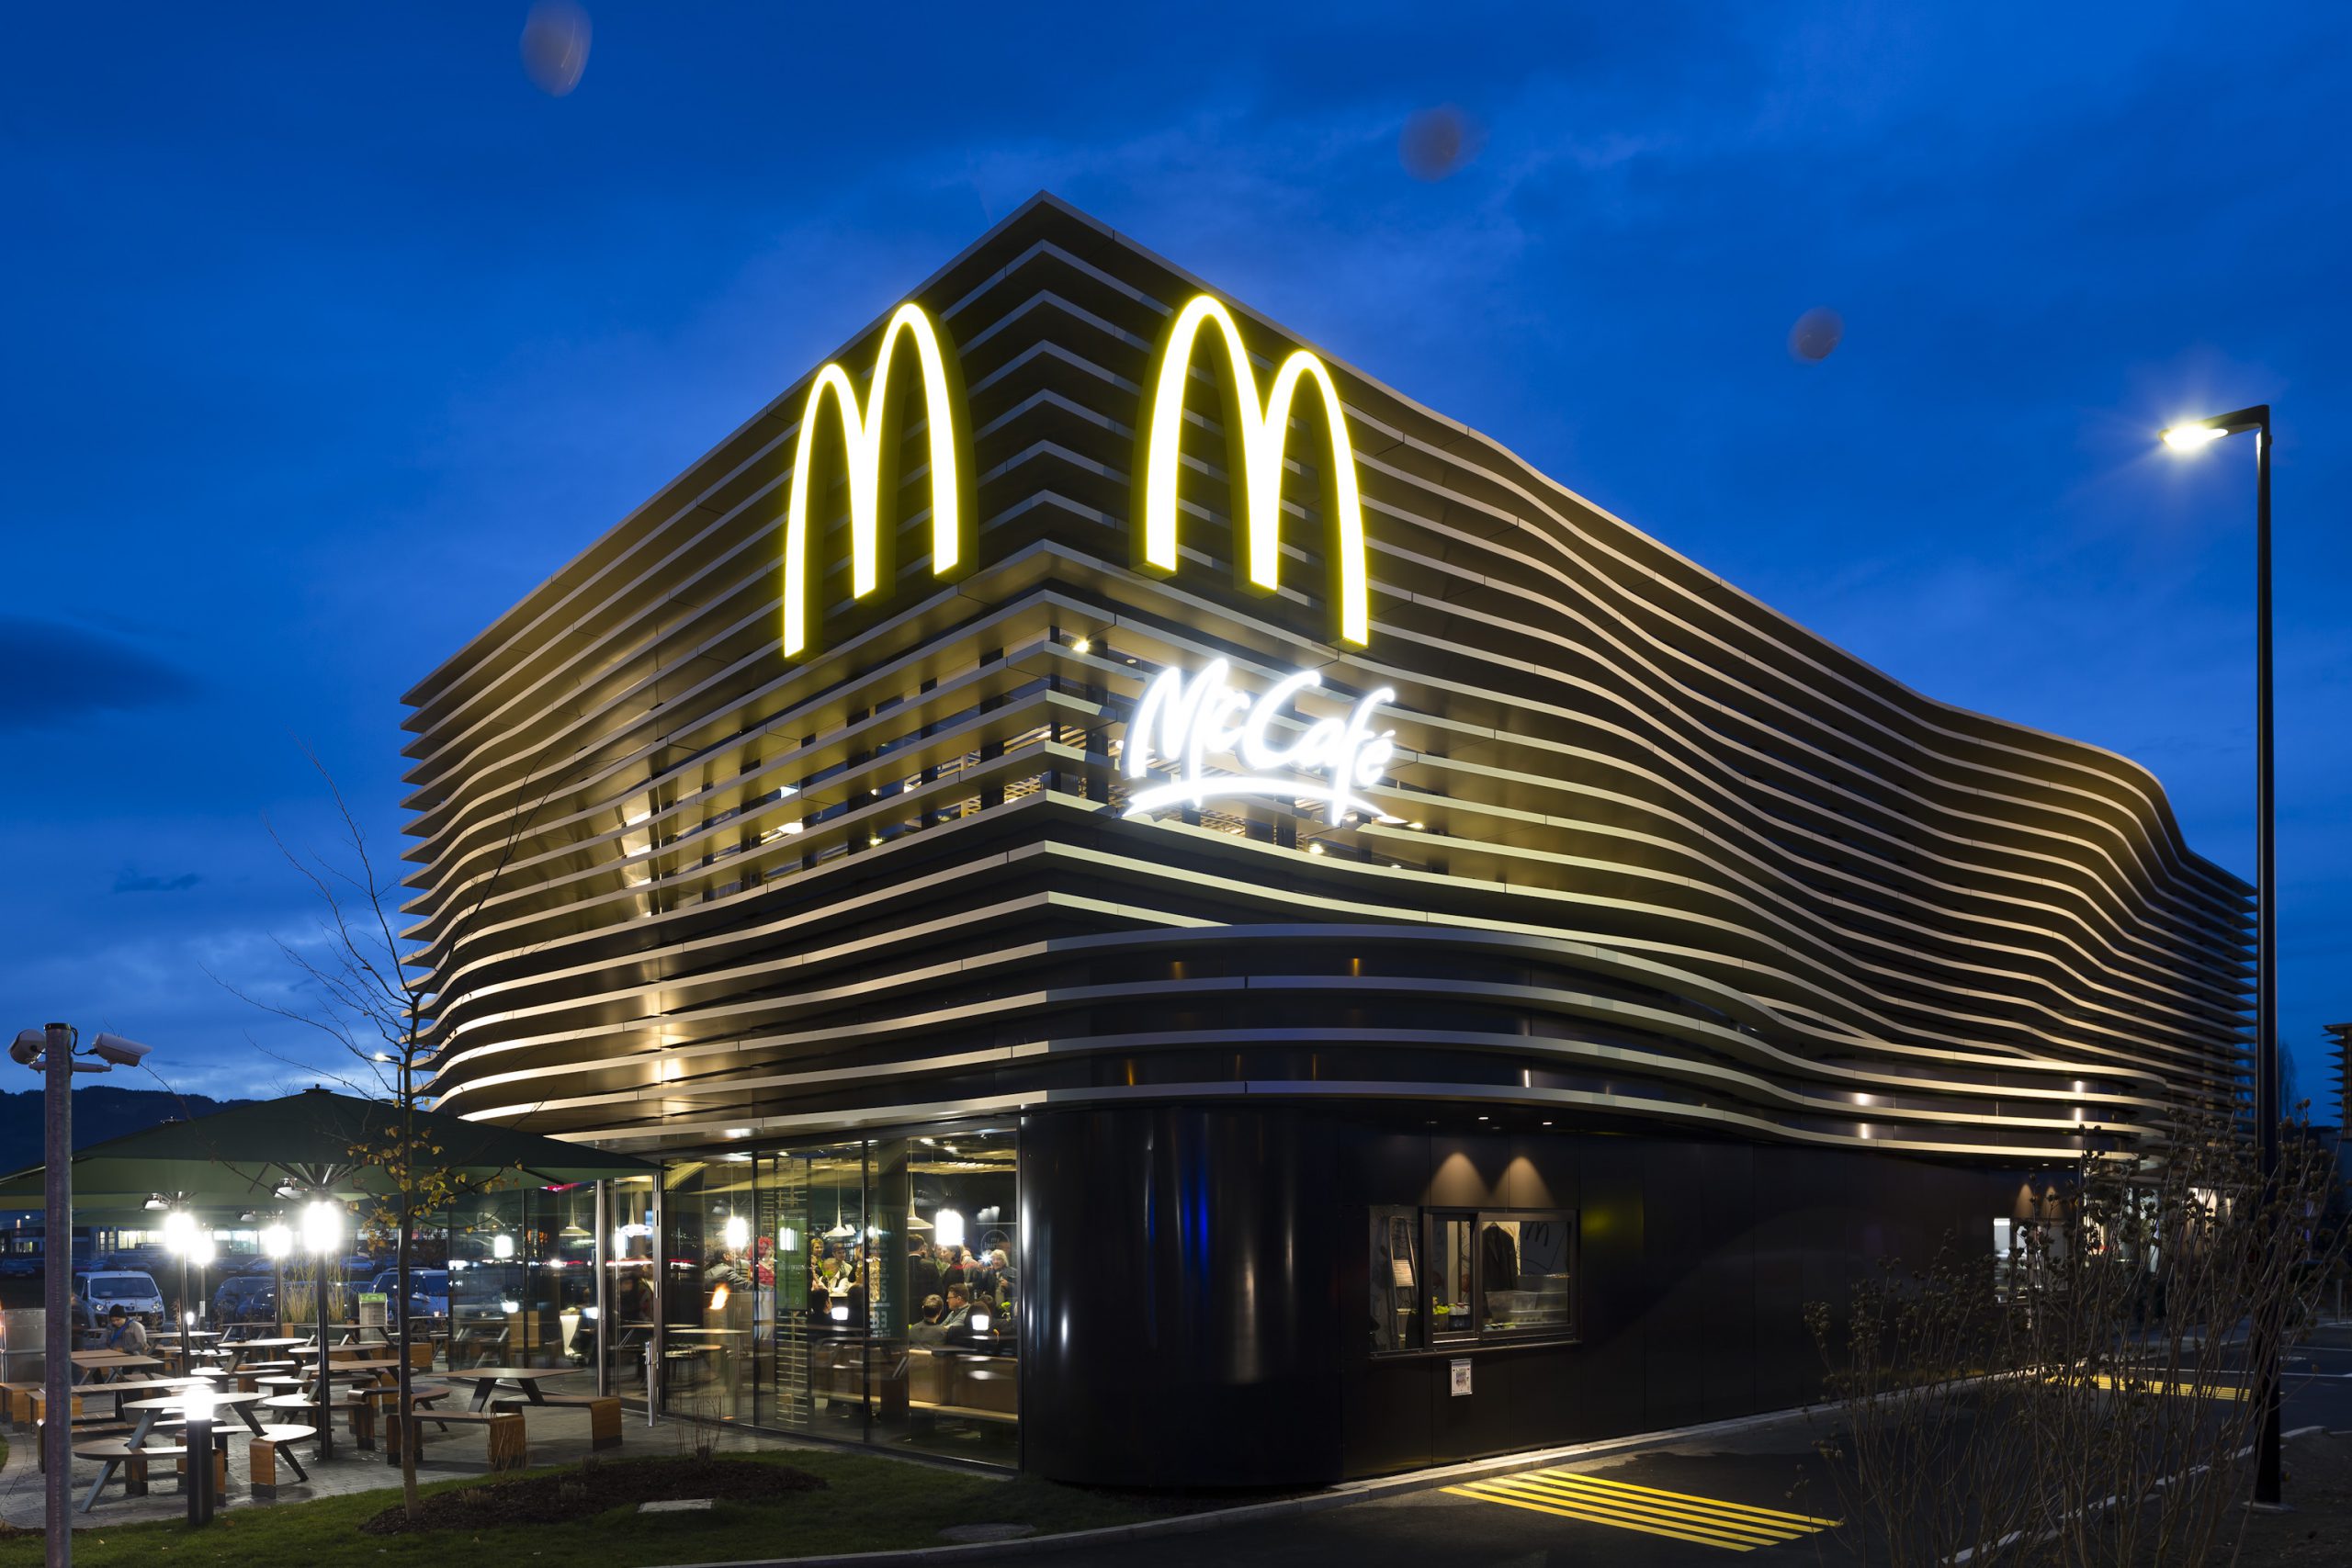 McDonald’s Österreich